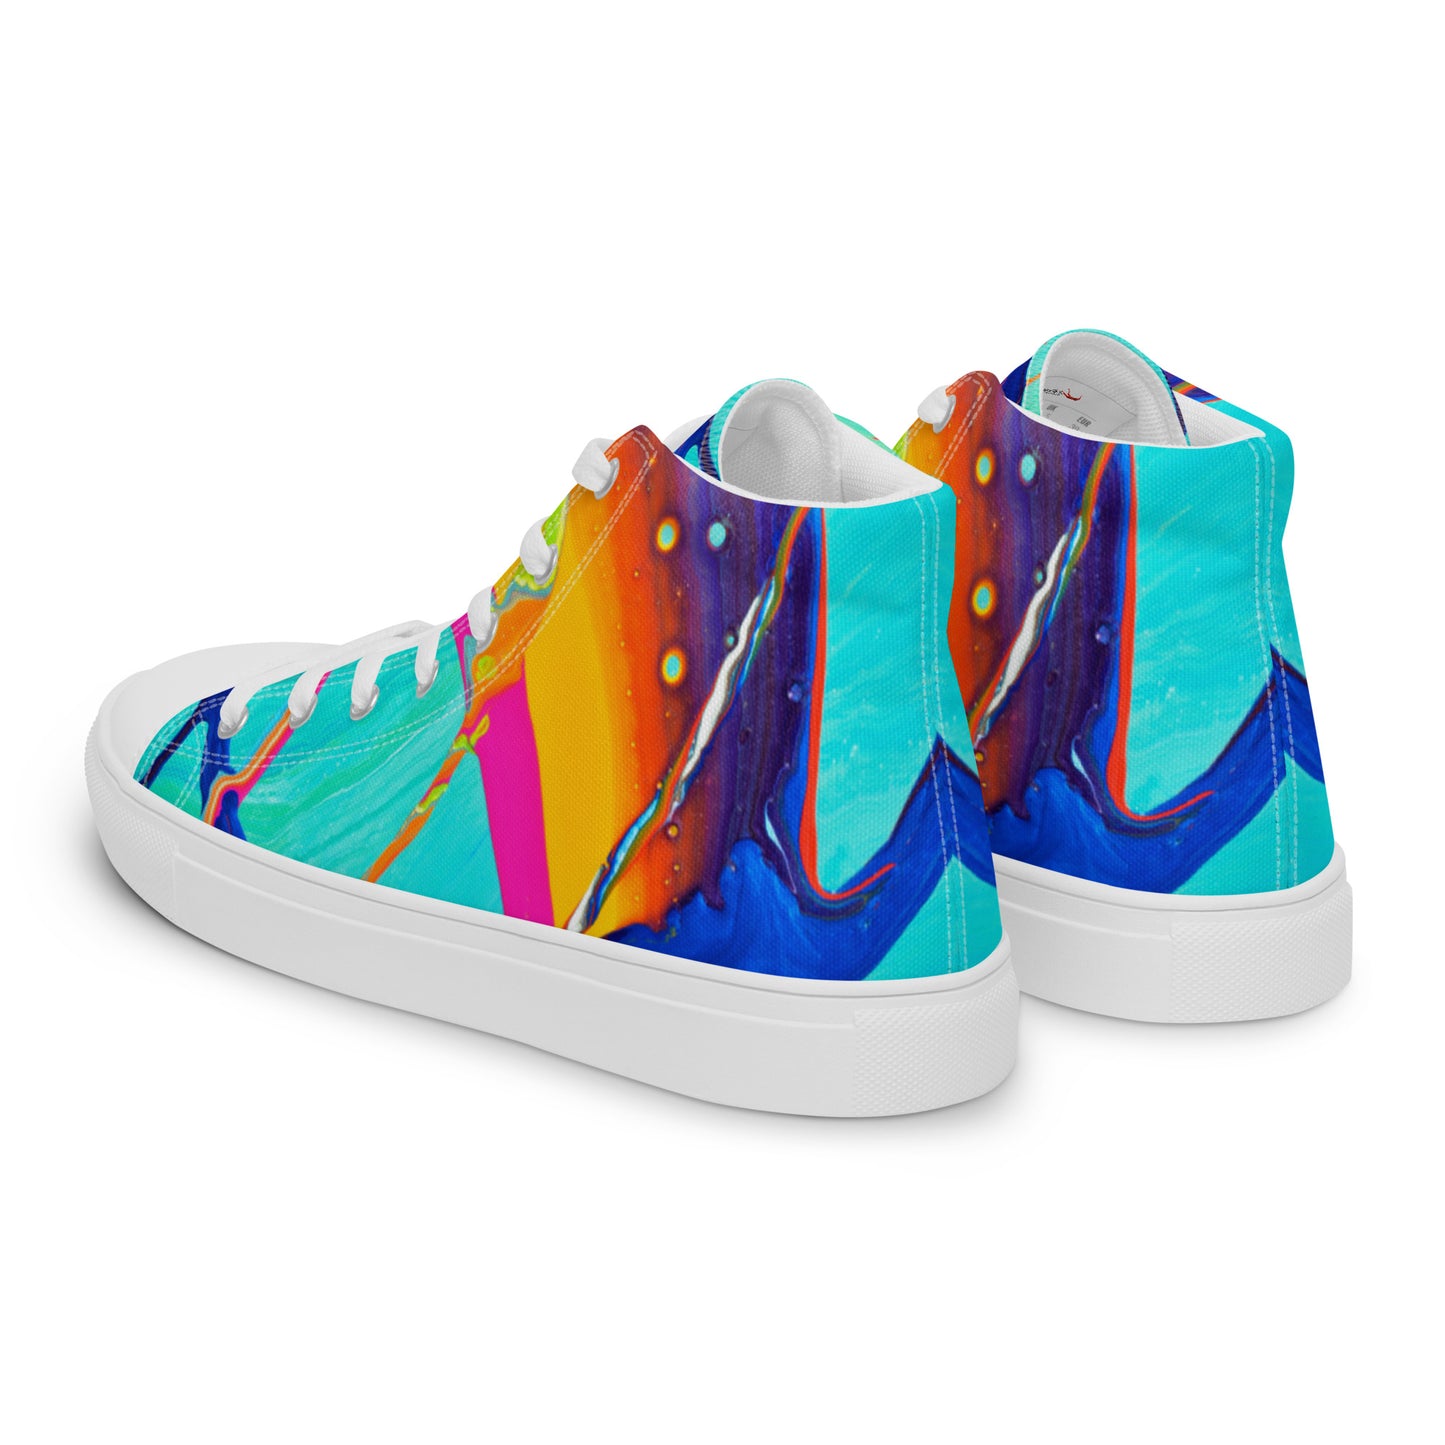 Men’s high top canvas shoes - Rainbow design